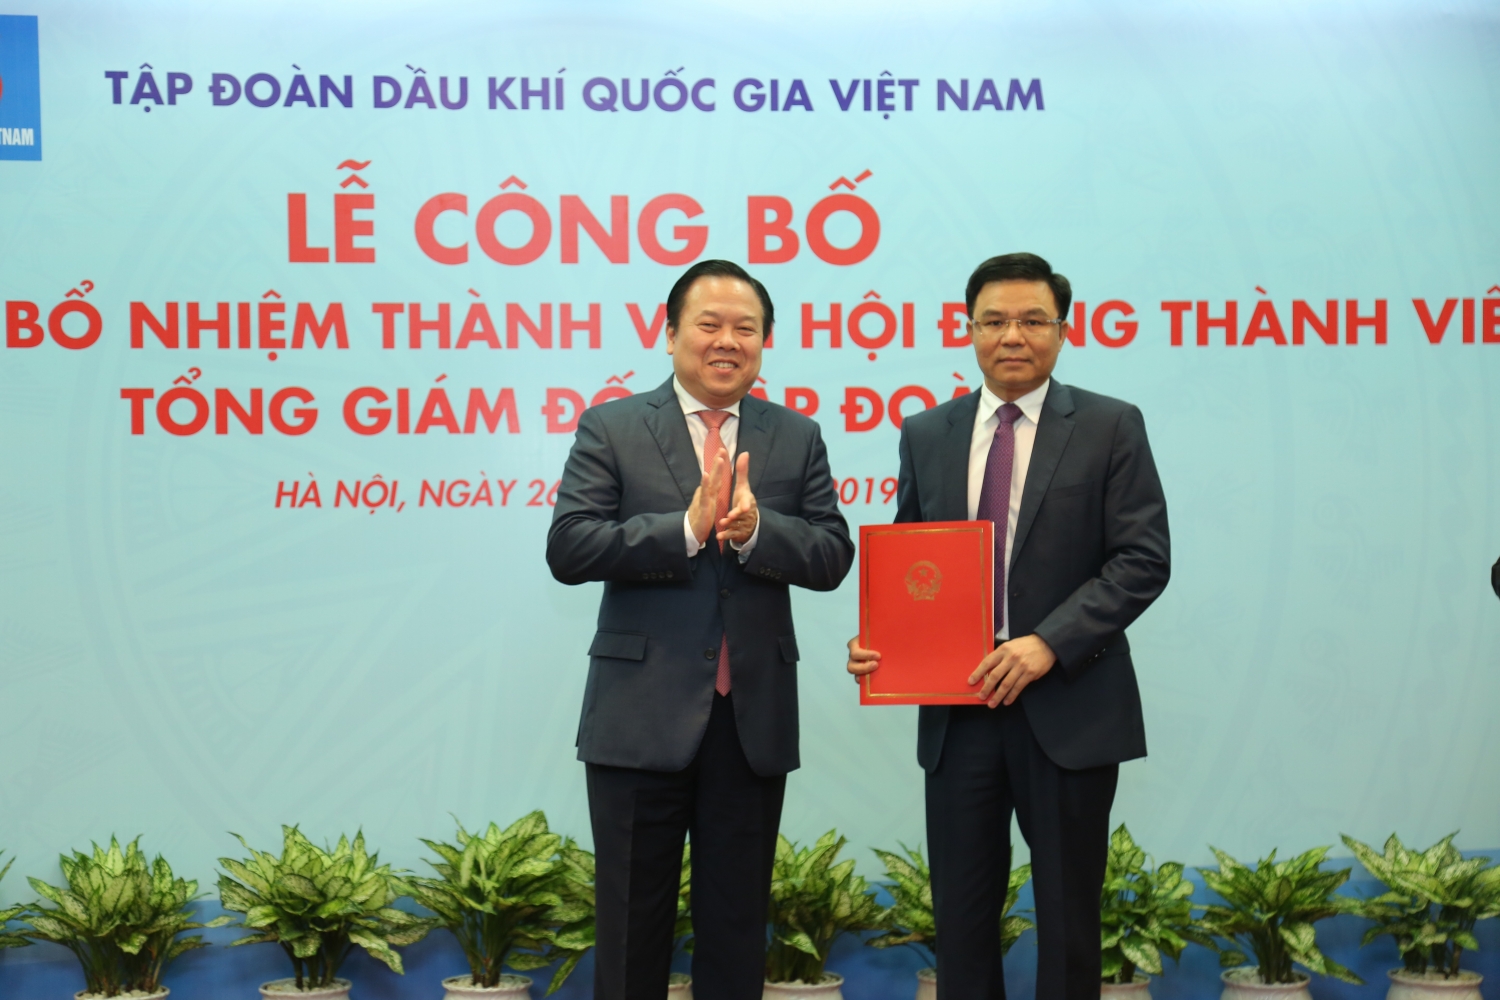 Tân Tổng Giám đốc Lê Mạnh Hùng: “Chung sức, chung lòng vì sự phát triển của PVN”